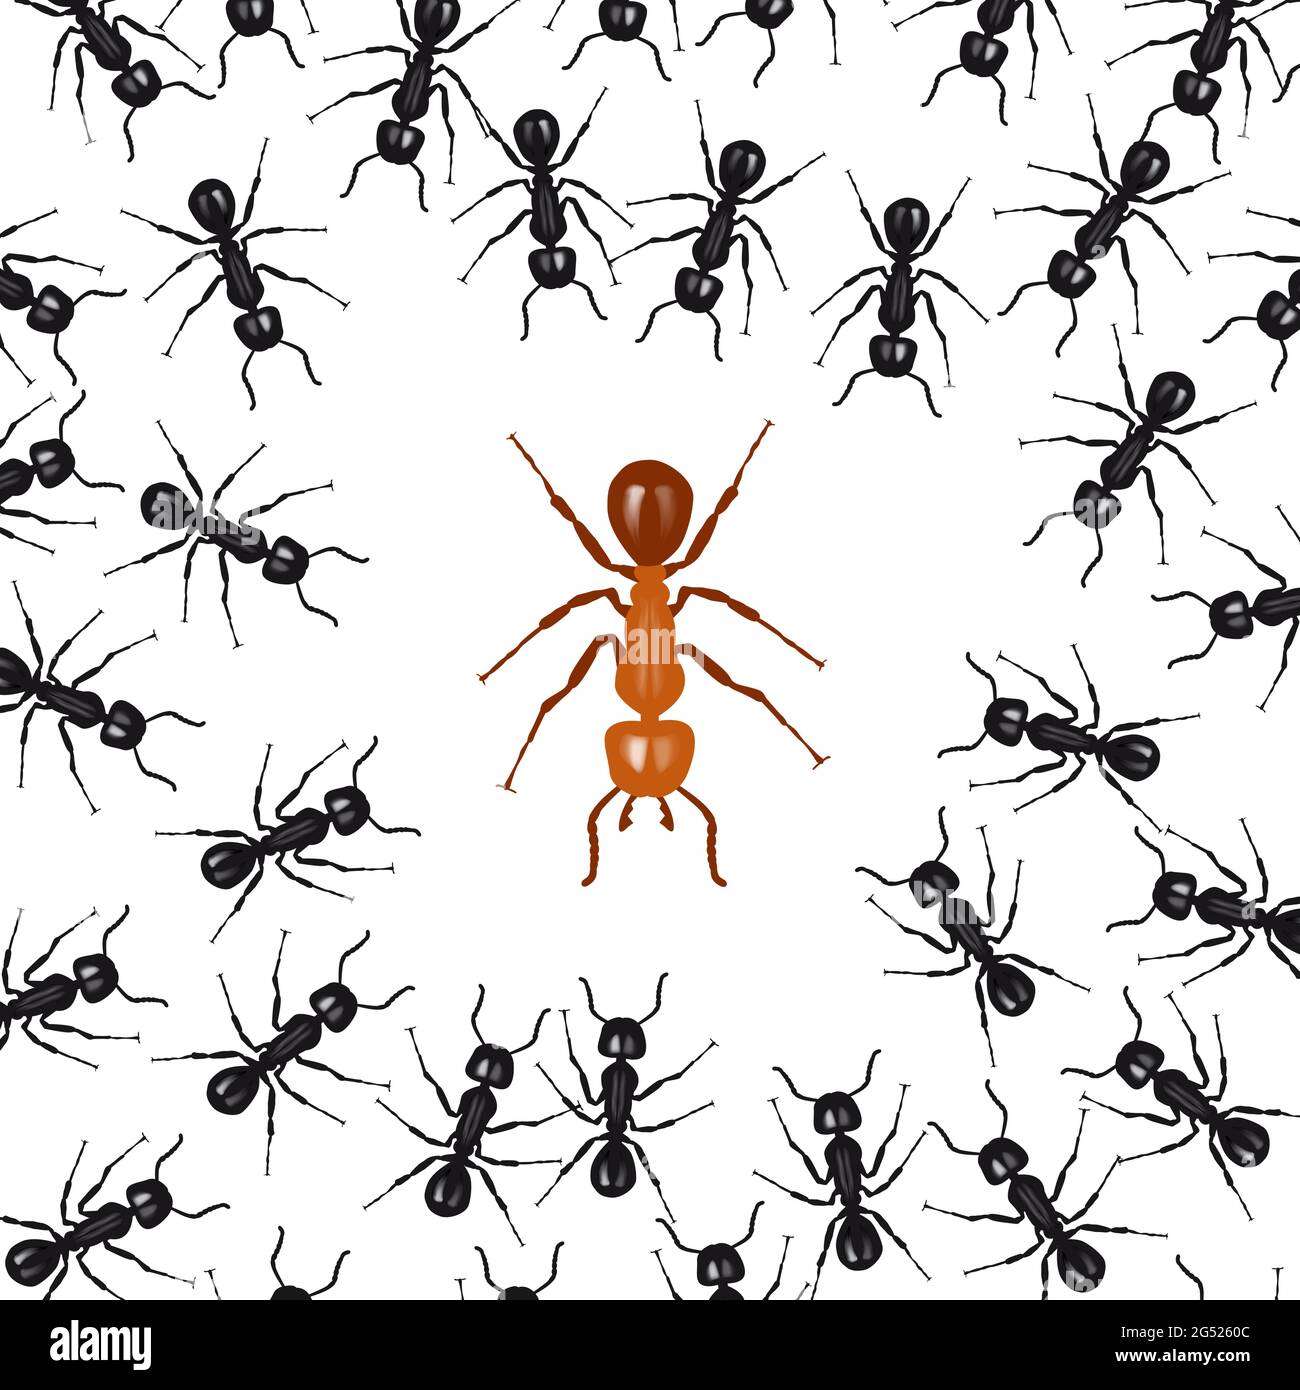 Fourmis organisées en un groupe lutte contre une fourmi rouge. Concept de l'union fait la force Illustration de Vecteur